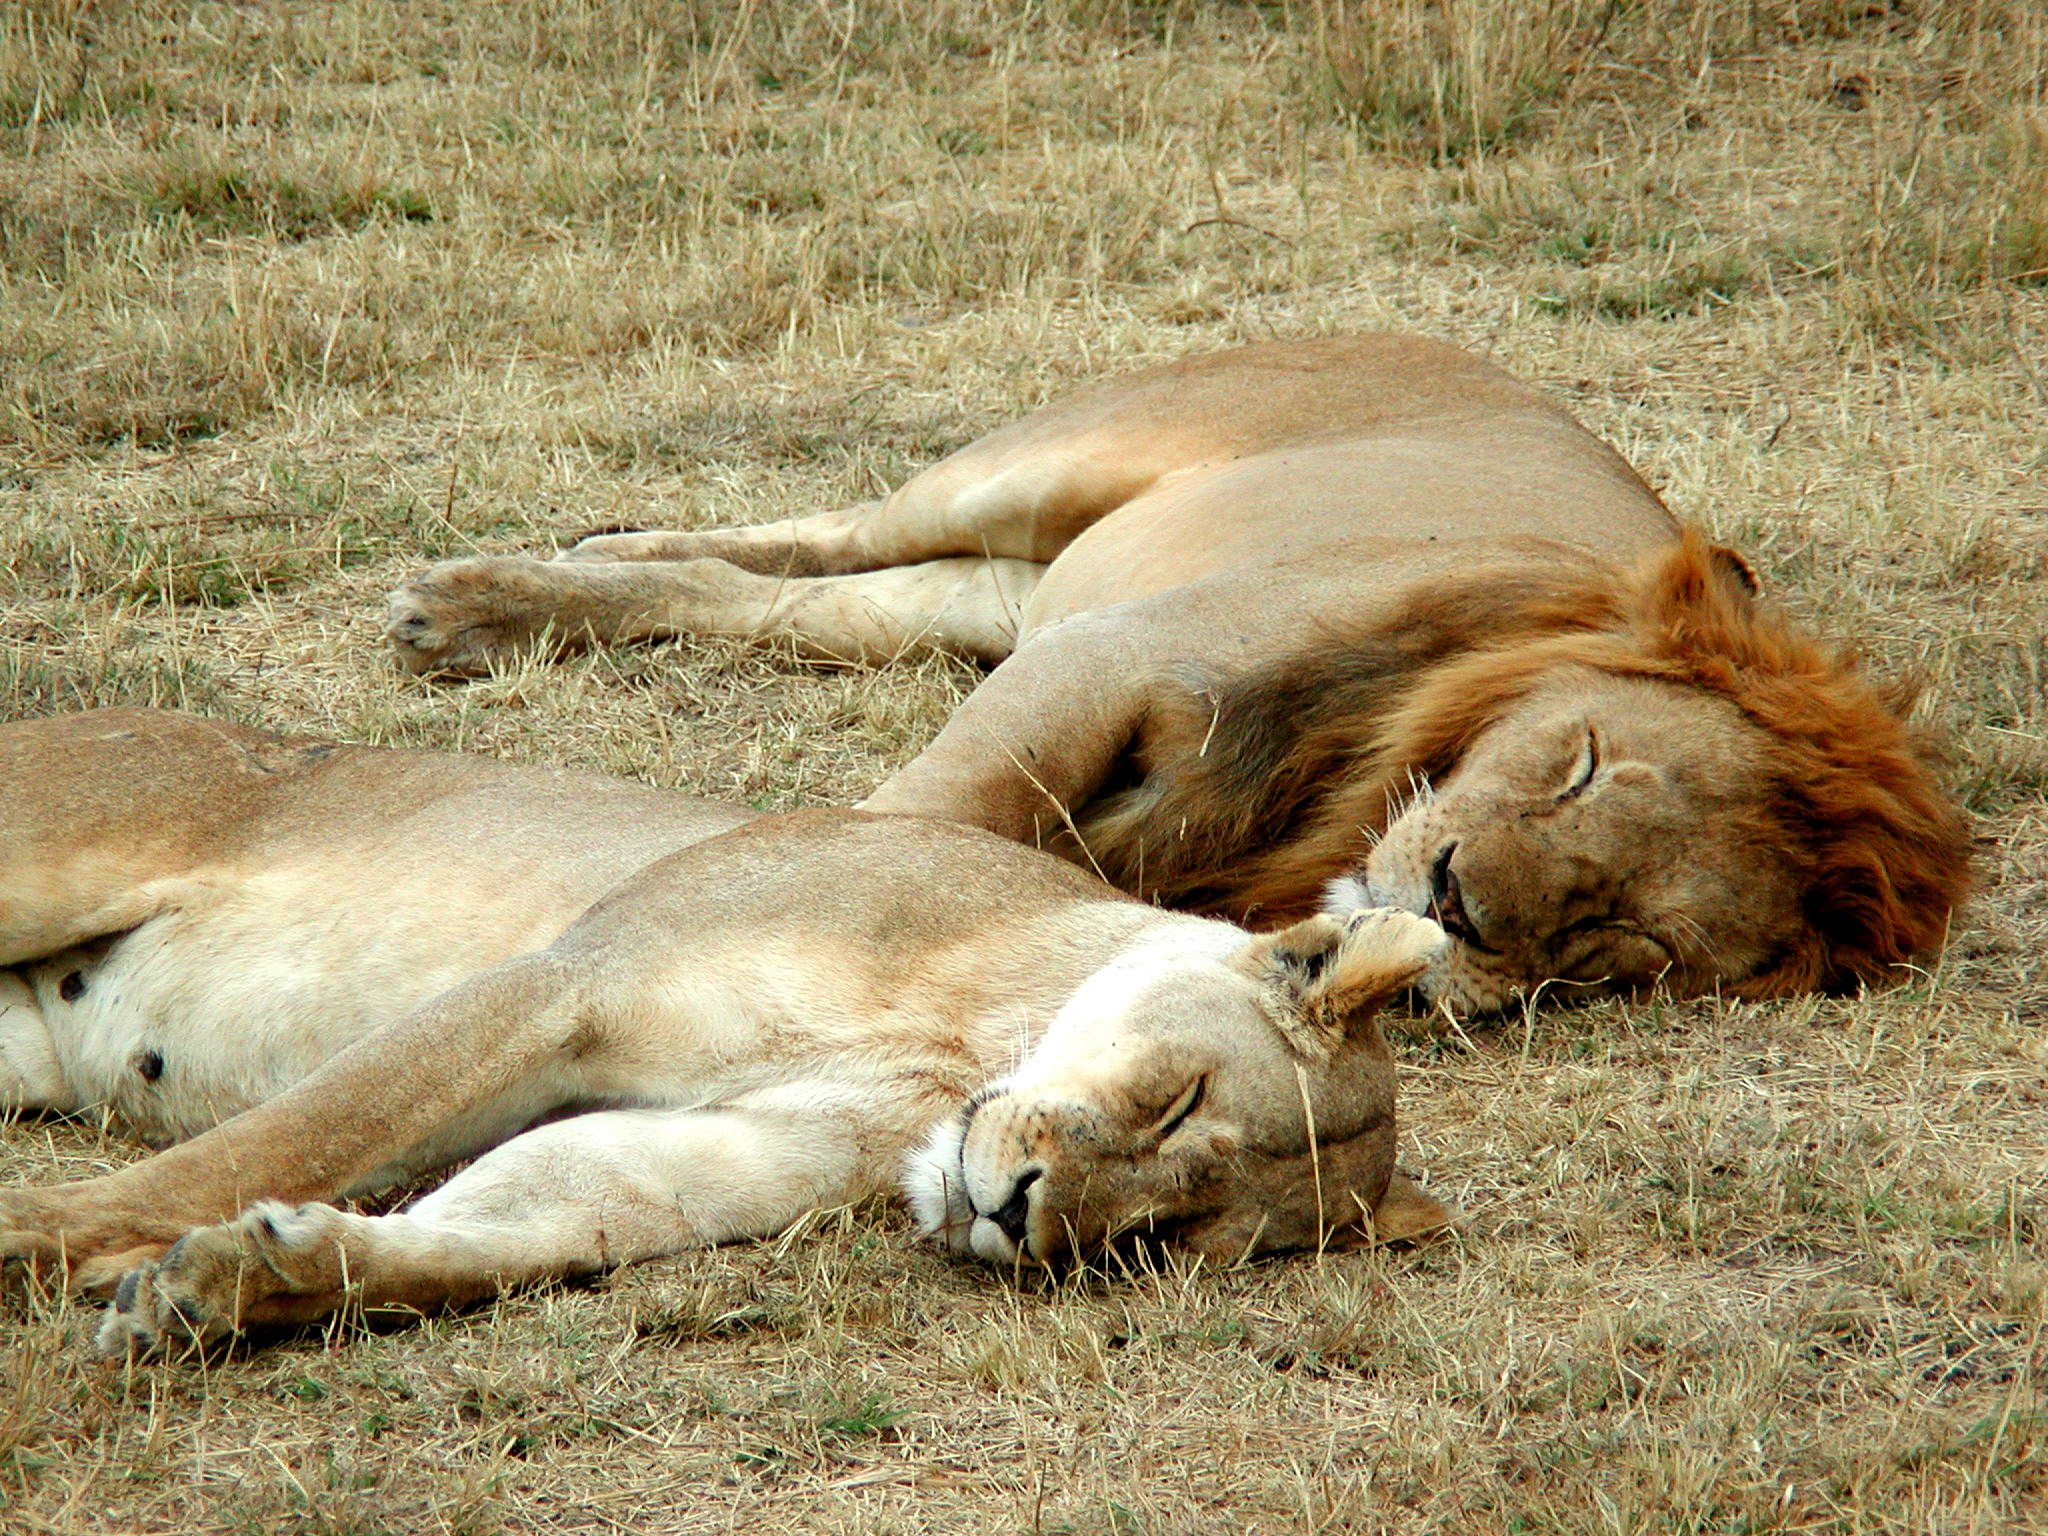 Sleep in animals - Wikipedia